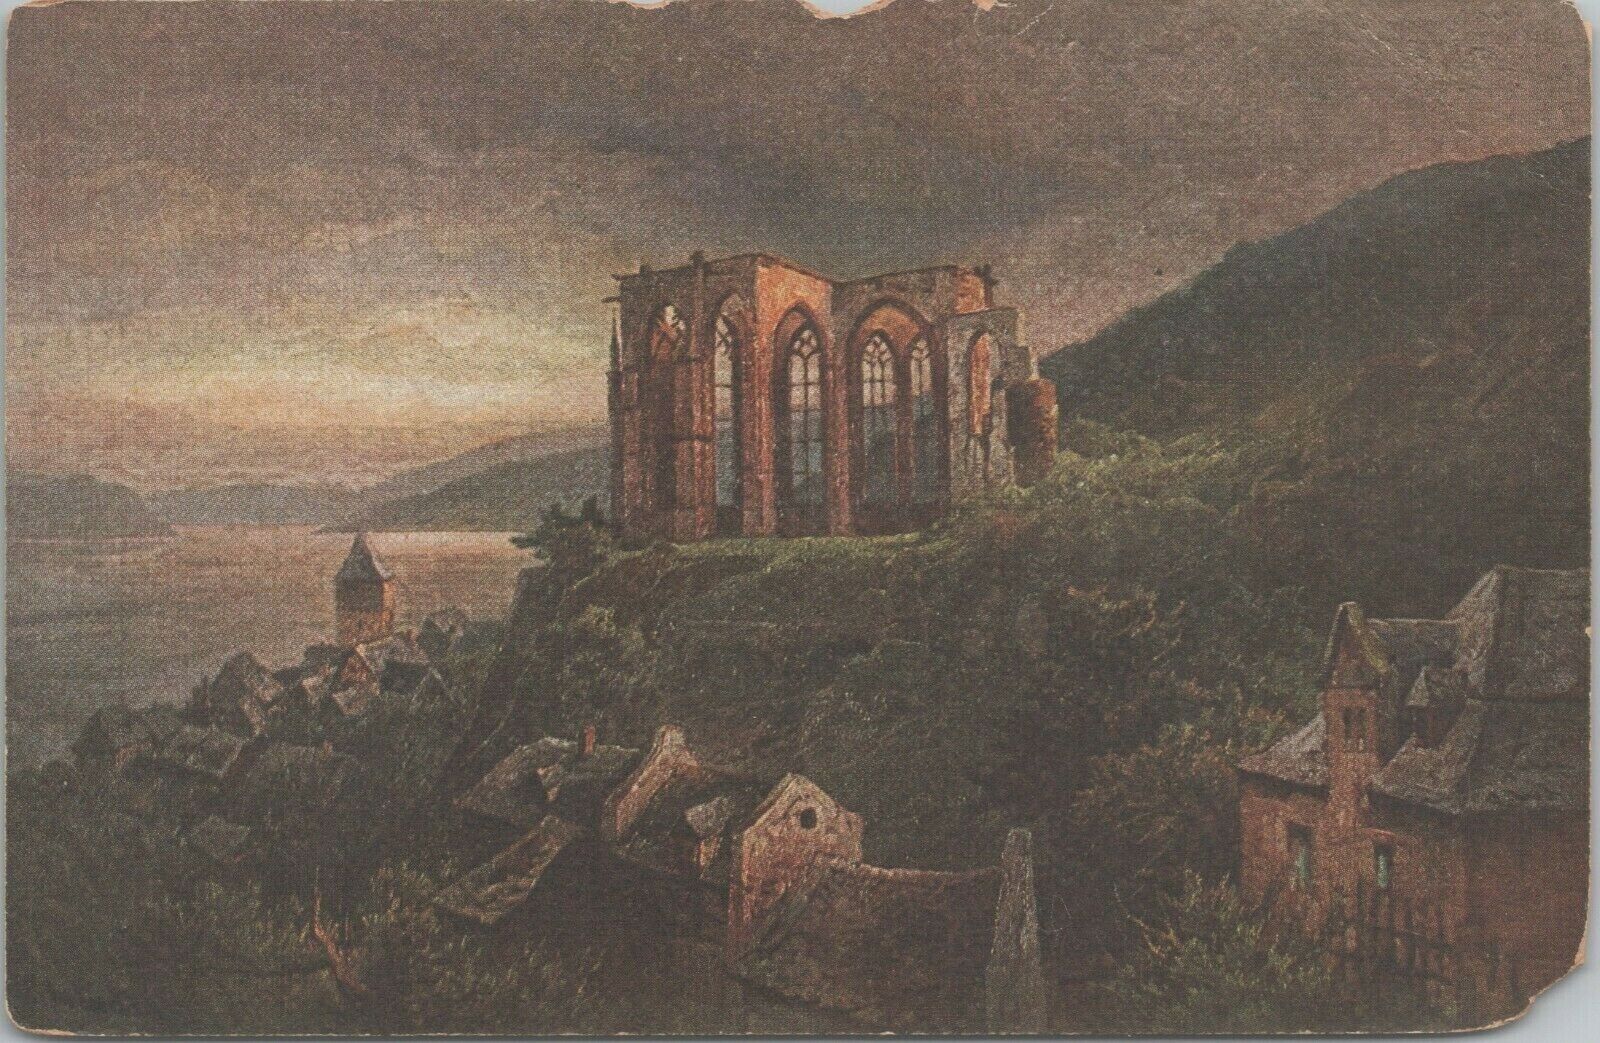 Die Wernerkapelle Bacharach Germany Deutschland CPA Antique Postcard - Unposted